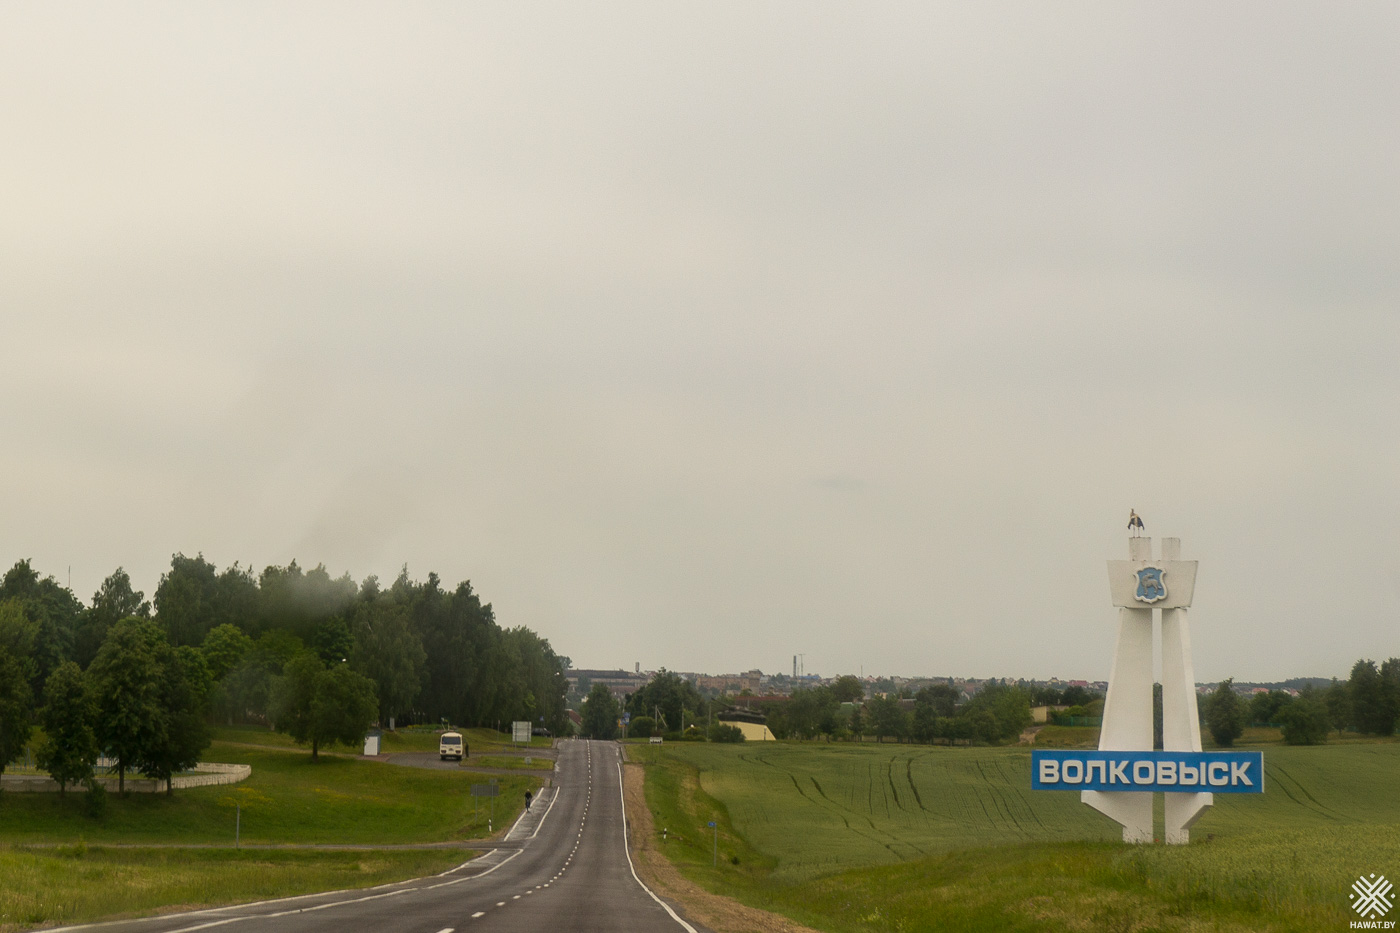 Волковыск, Беларусь